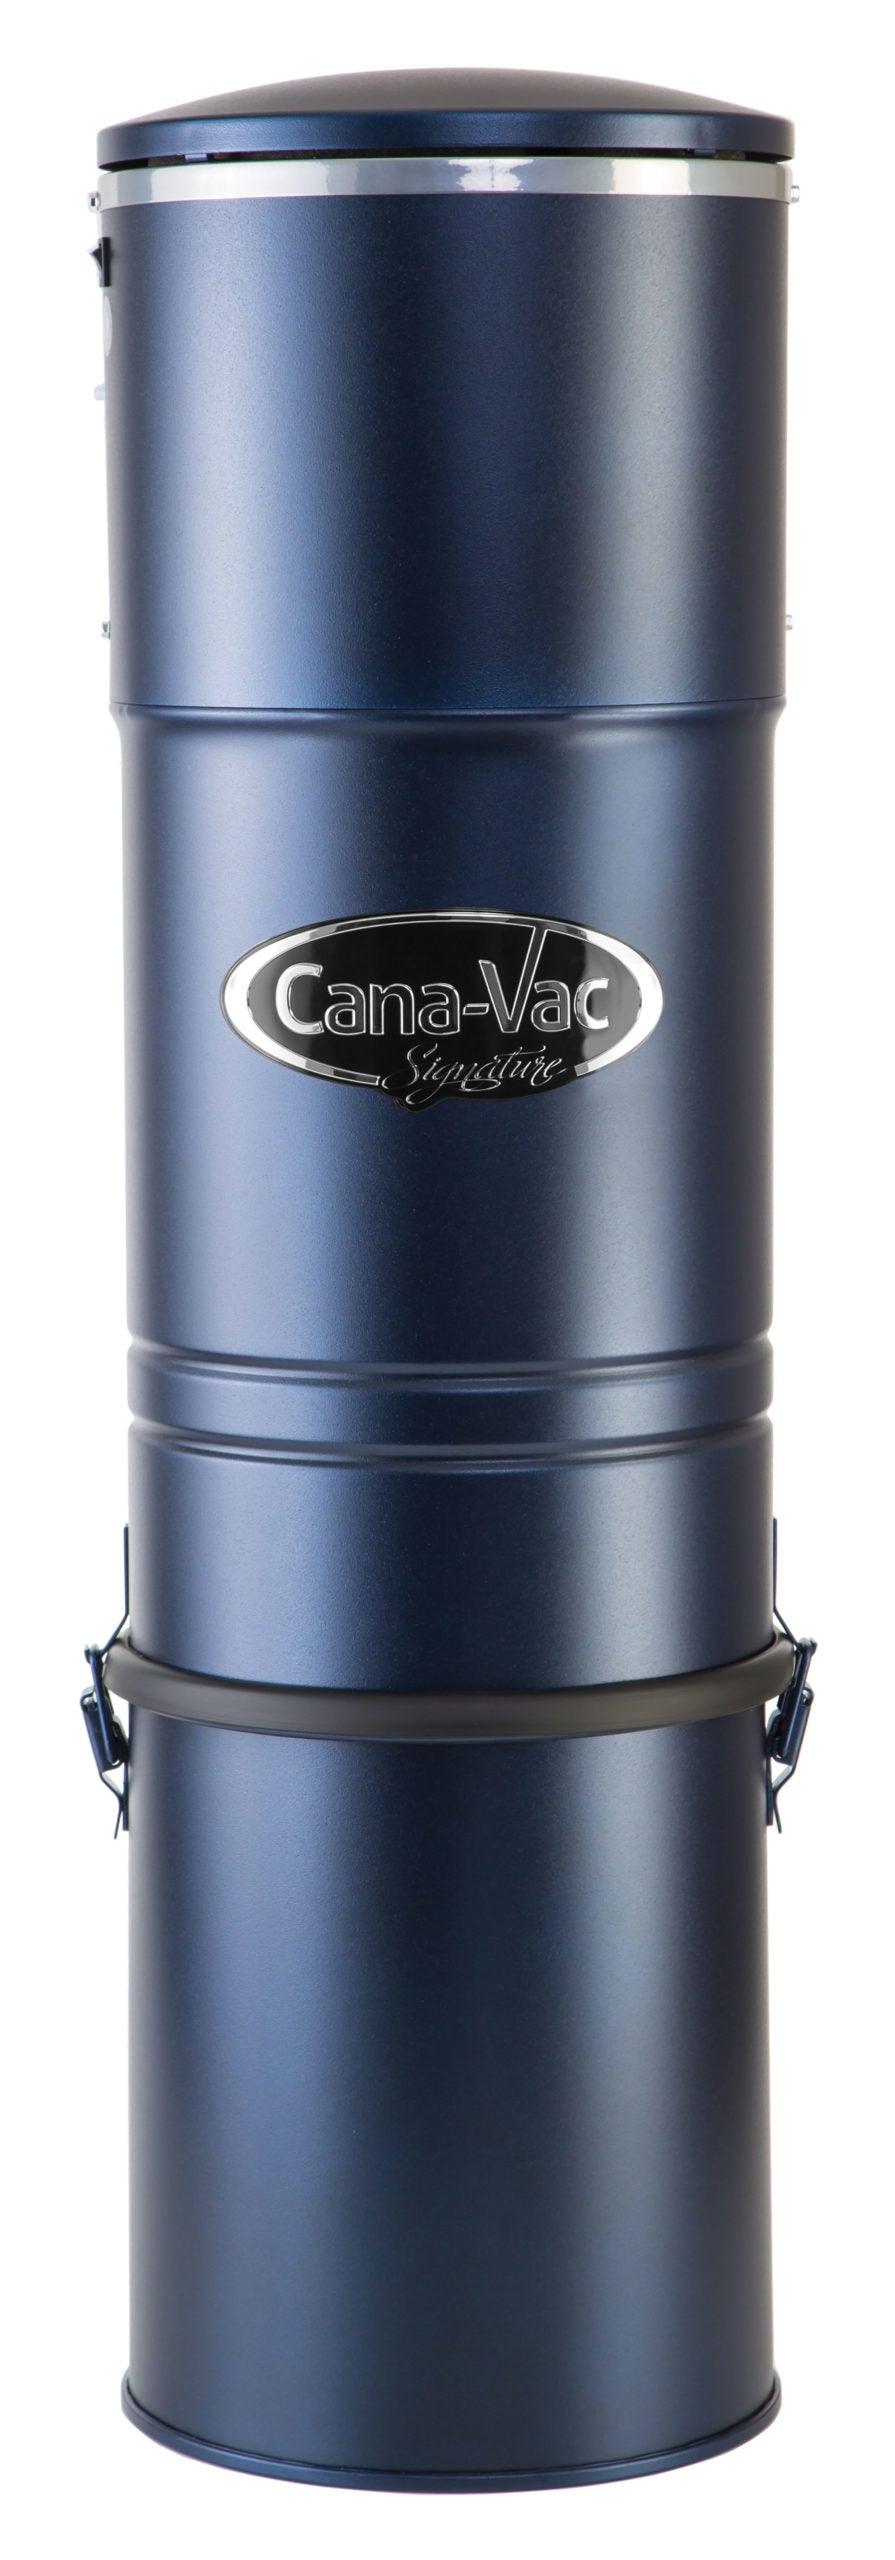 Cana-Vac LS590 Central Vacuum Unit - Geek Vacuums